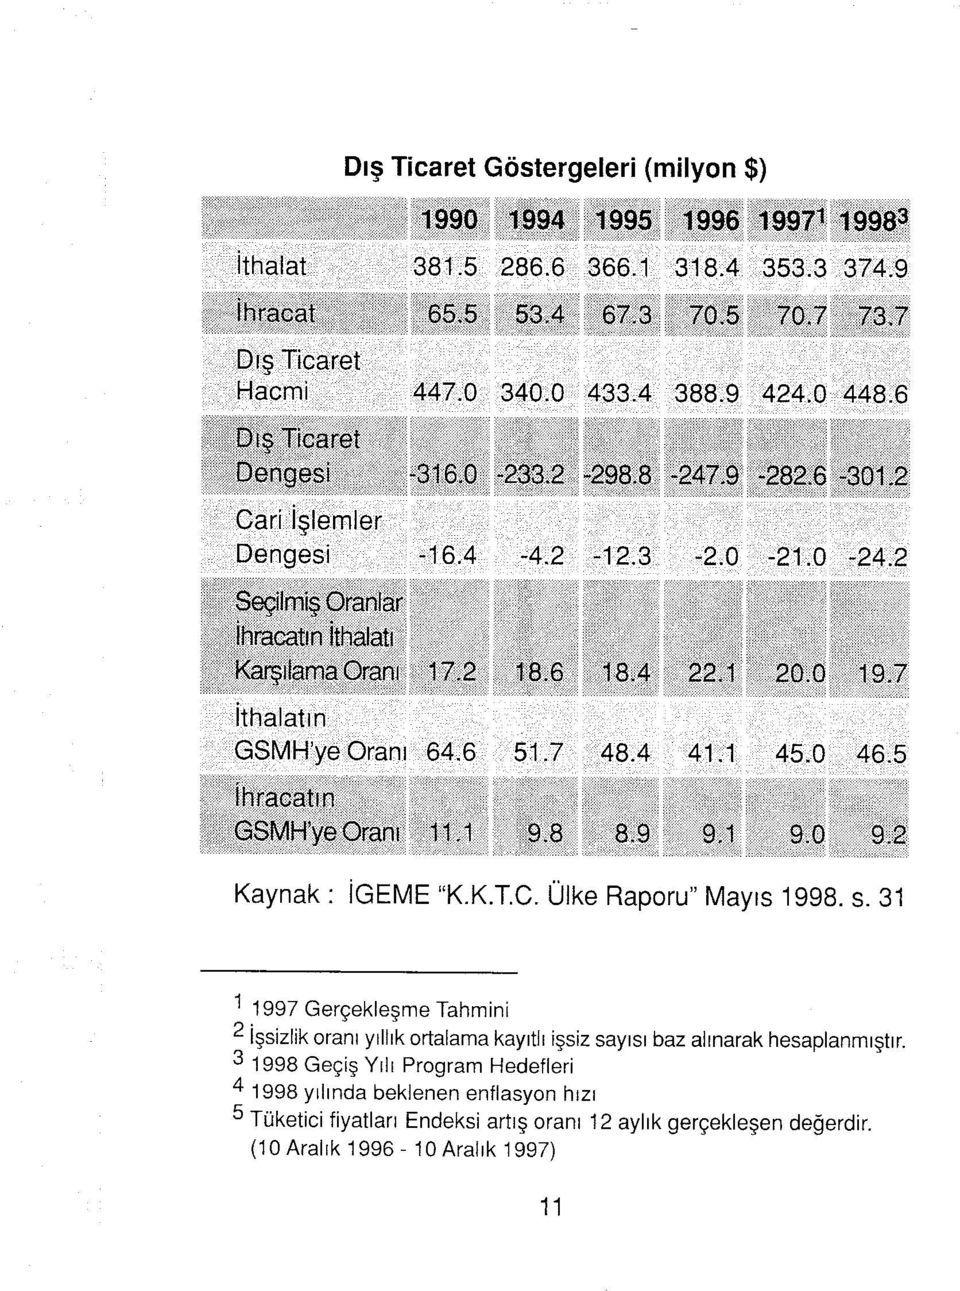 0 19 J İthalatın GSMH'ye ranı 64.6 51.7 48.4 41,1 45.0 46.5 ihracatın GSMKye ranı 1t1 9.8 8.9 9.1 9.0 9.2 Kaynak : İGEME "K.K.TC. Ülke Raporu" Mayıs 1998. s.